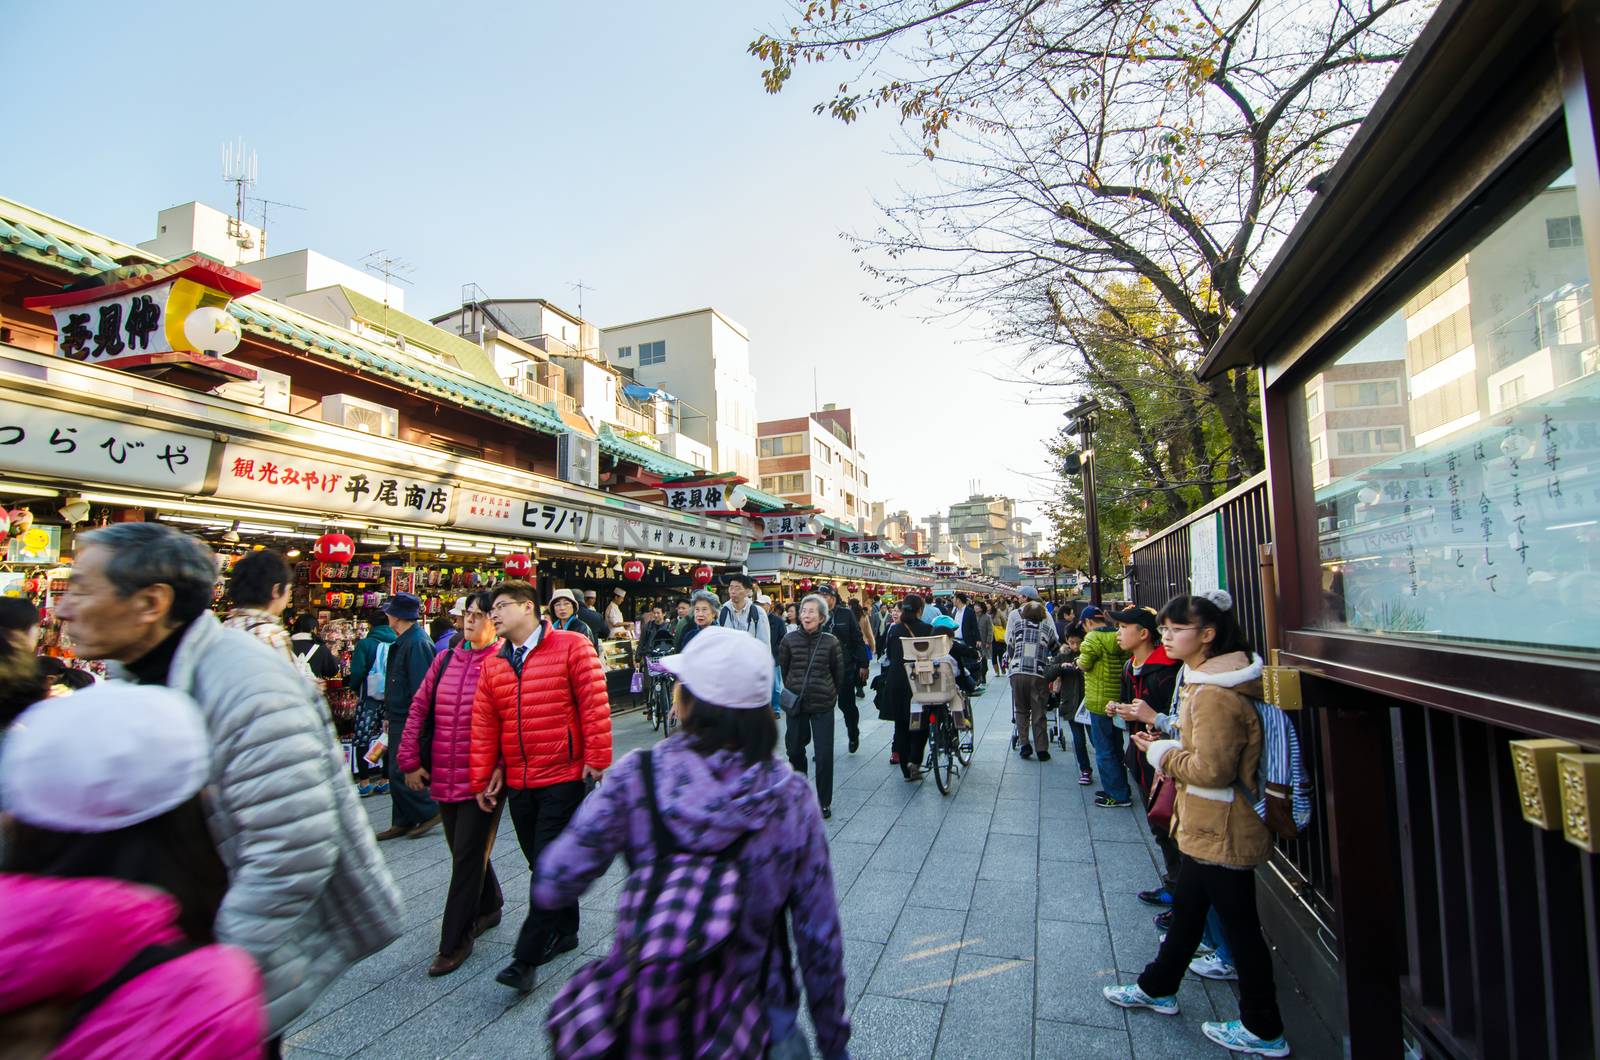 Tokyo, Japan - November 21, 2013: Tourists visit Nakamise shopping street by siraanamwong